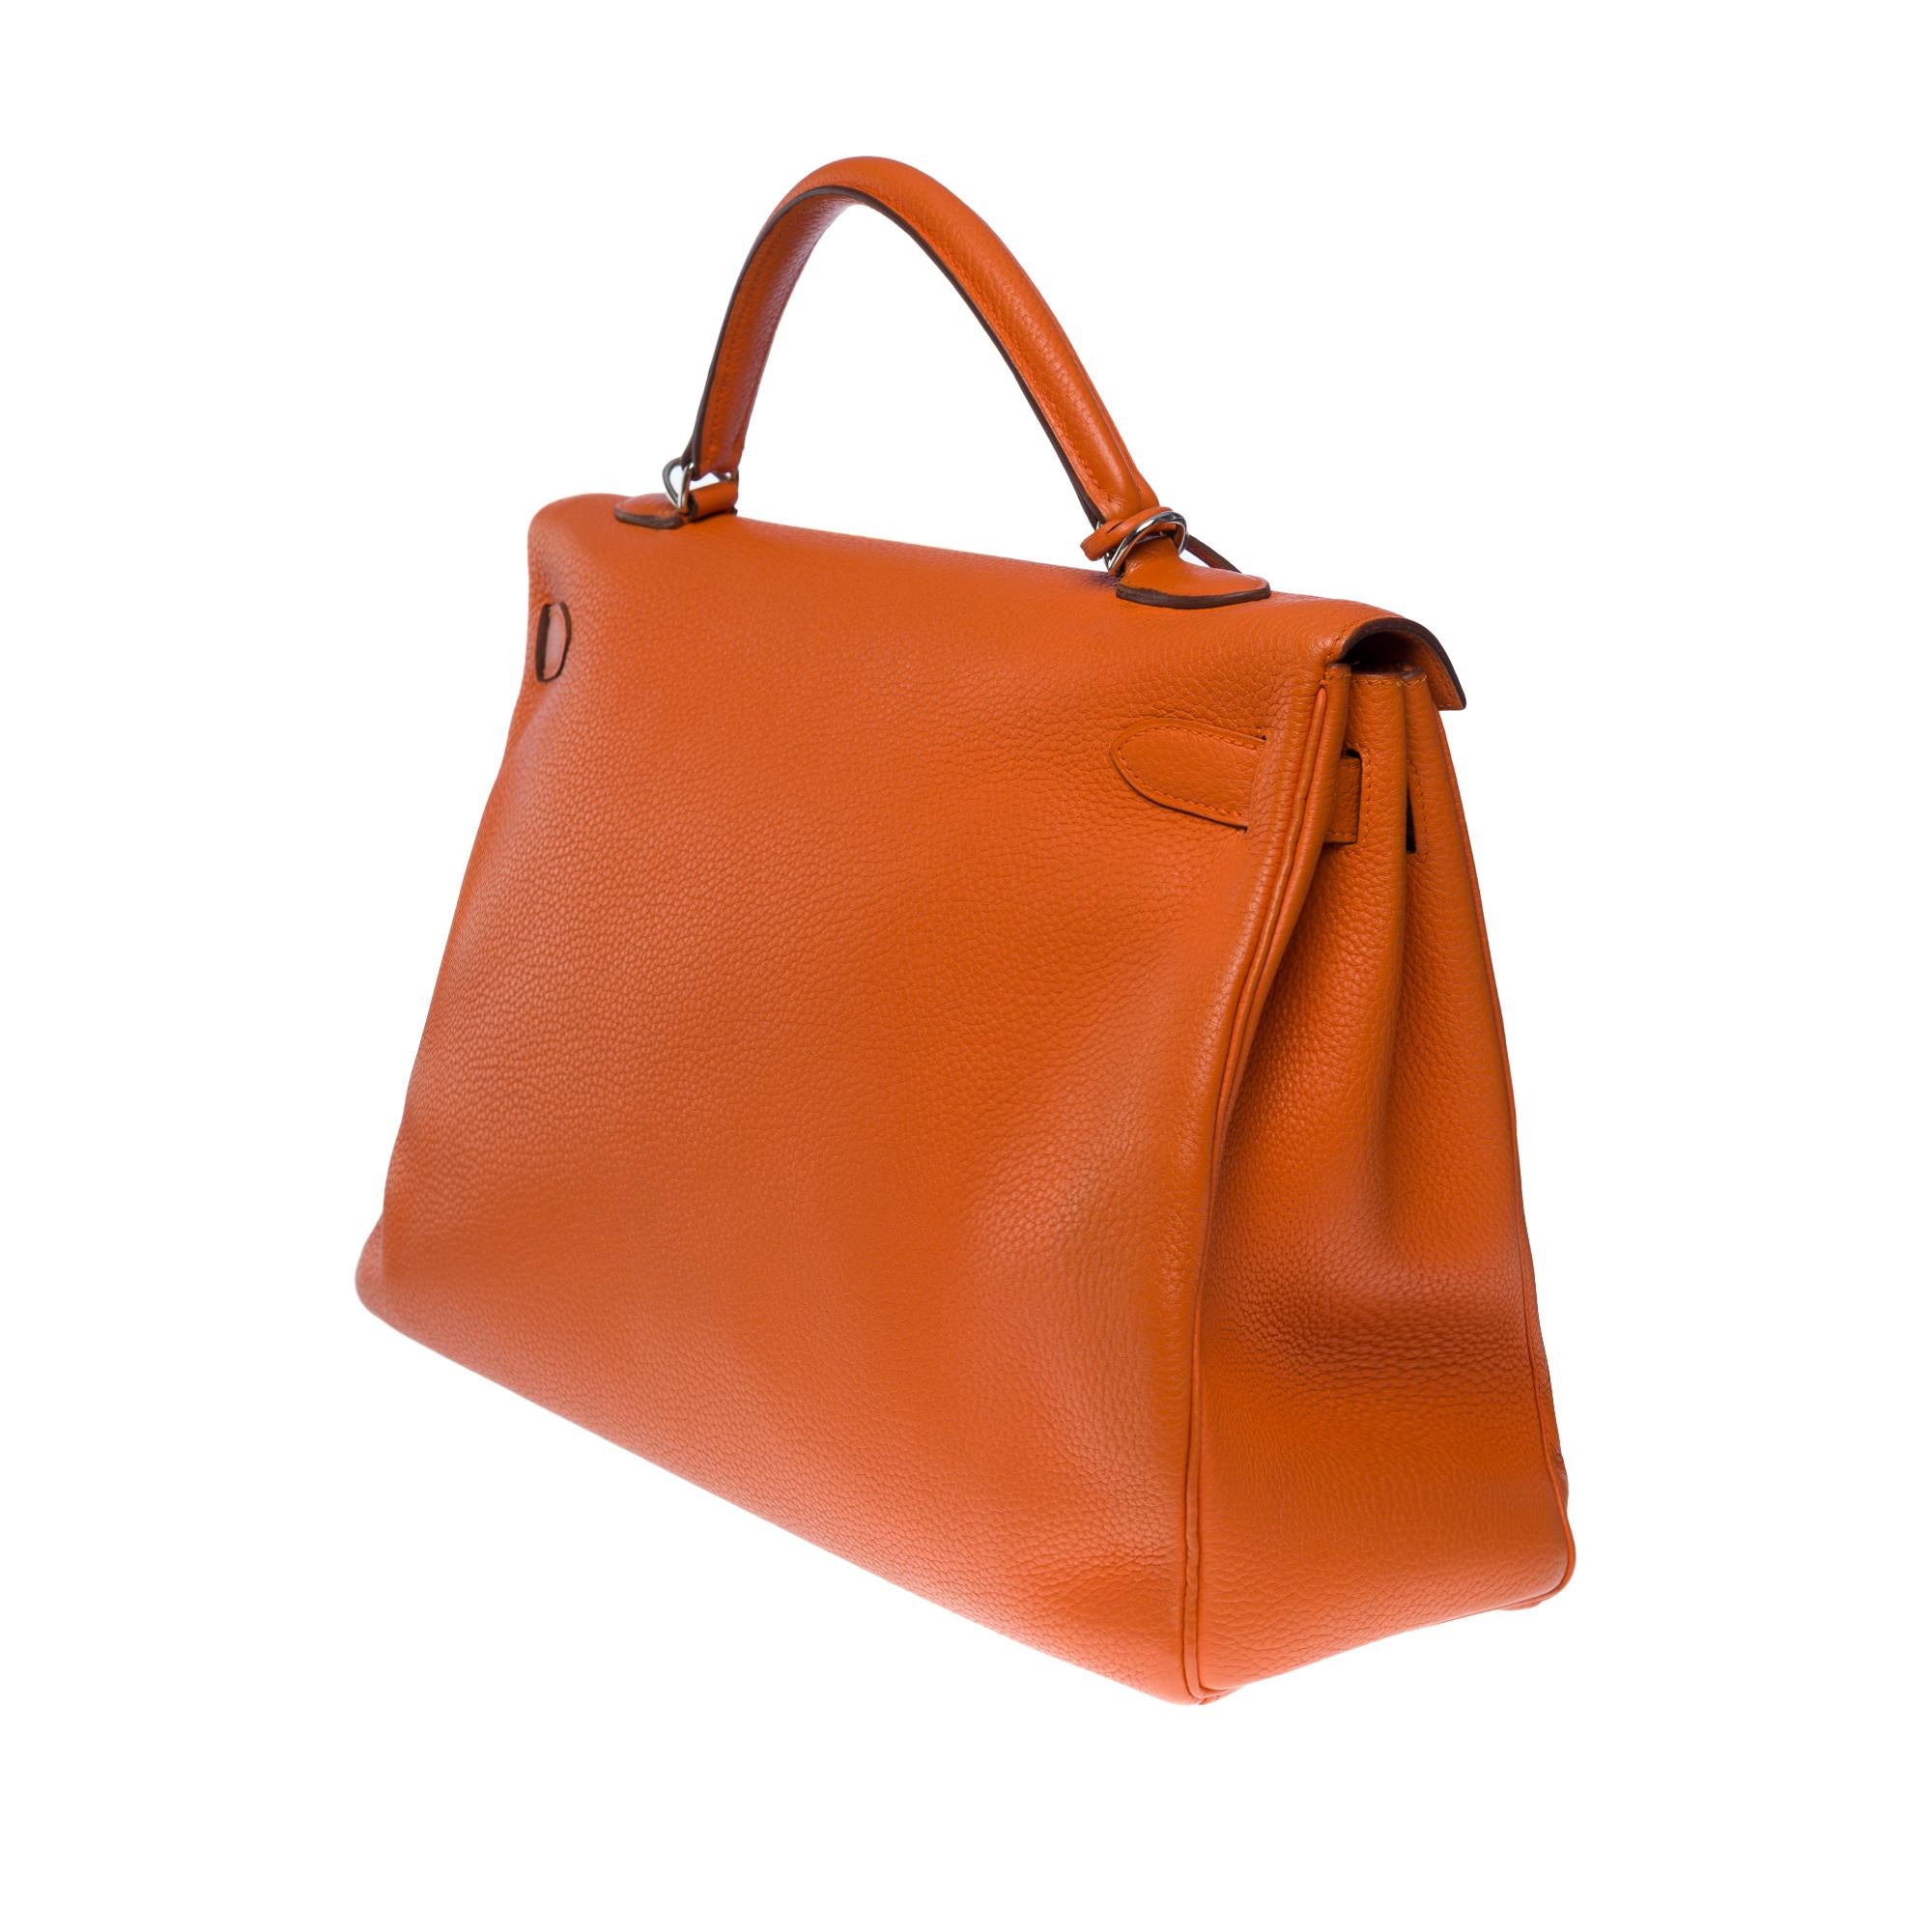 Hermes Kelly 40 retourne handbag strap in Orange Togo leather, SHW 2